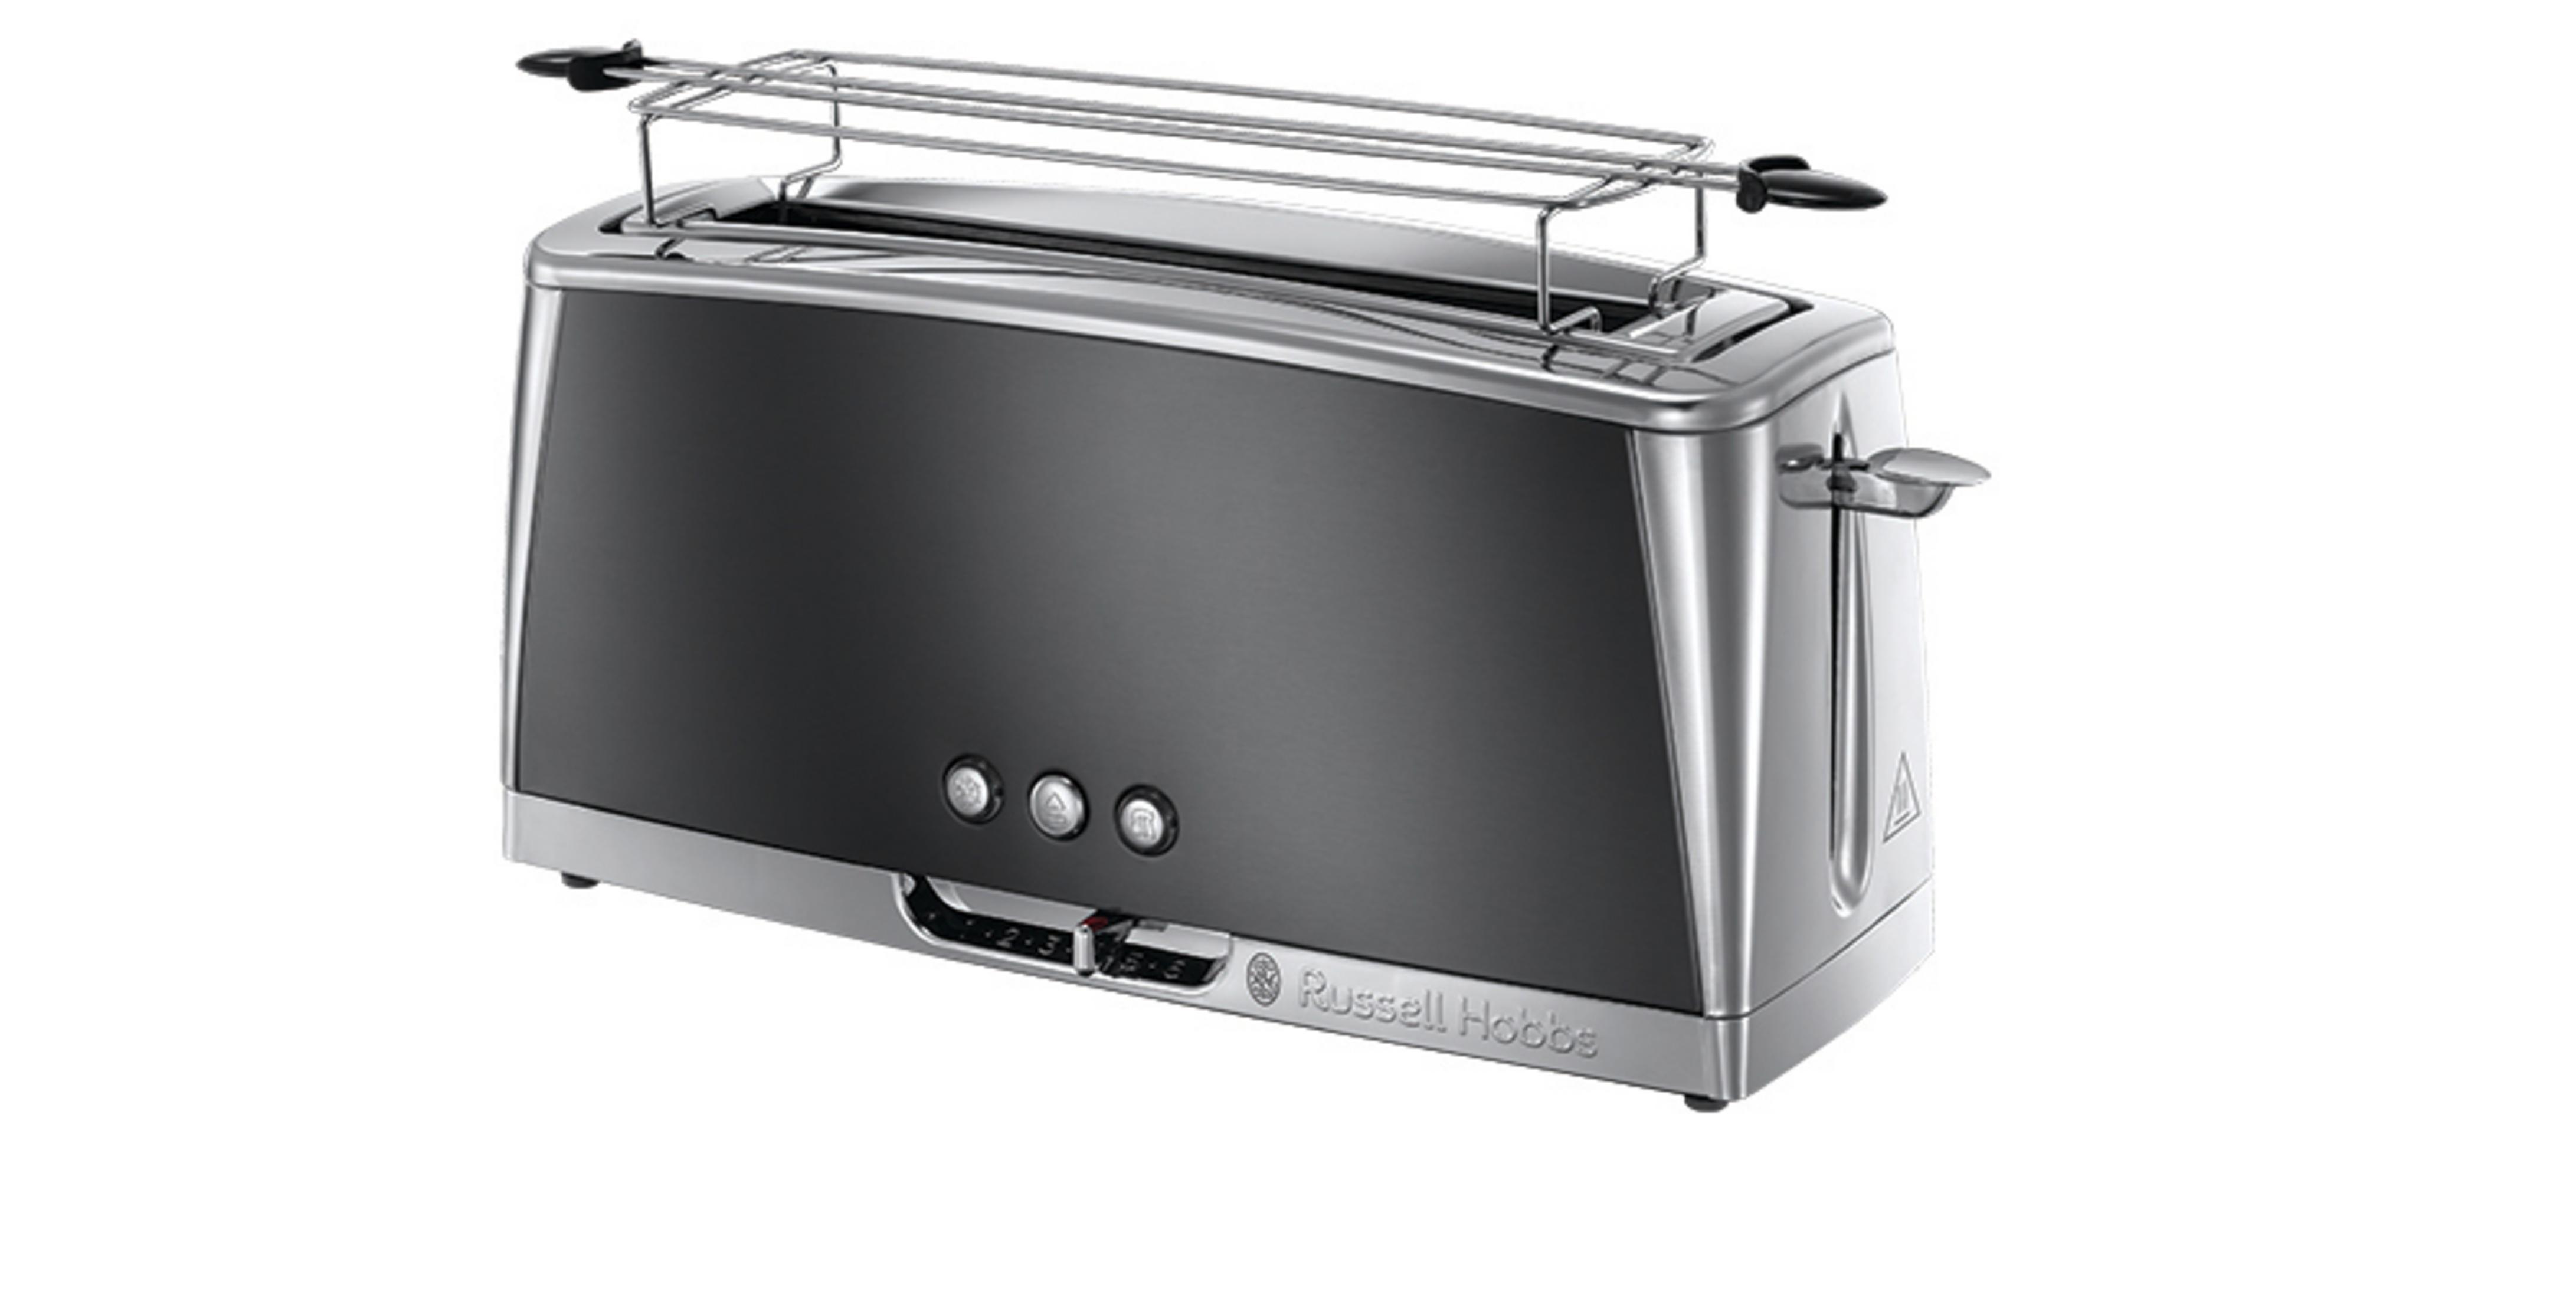 RUSSELL LUNA Toaster 23251-56 Edelstahl/Grau 1) GREY Watt, LANGSCHLITZ (1420 HOBBS MOONLIGHT Schlitze: